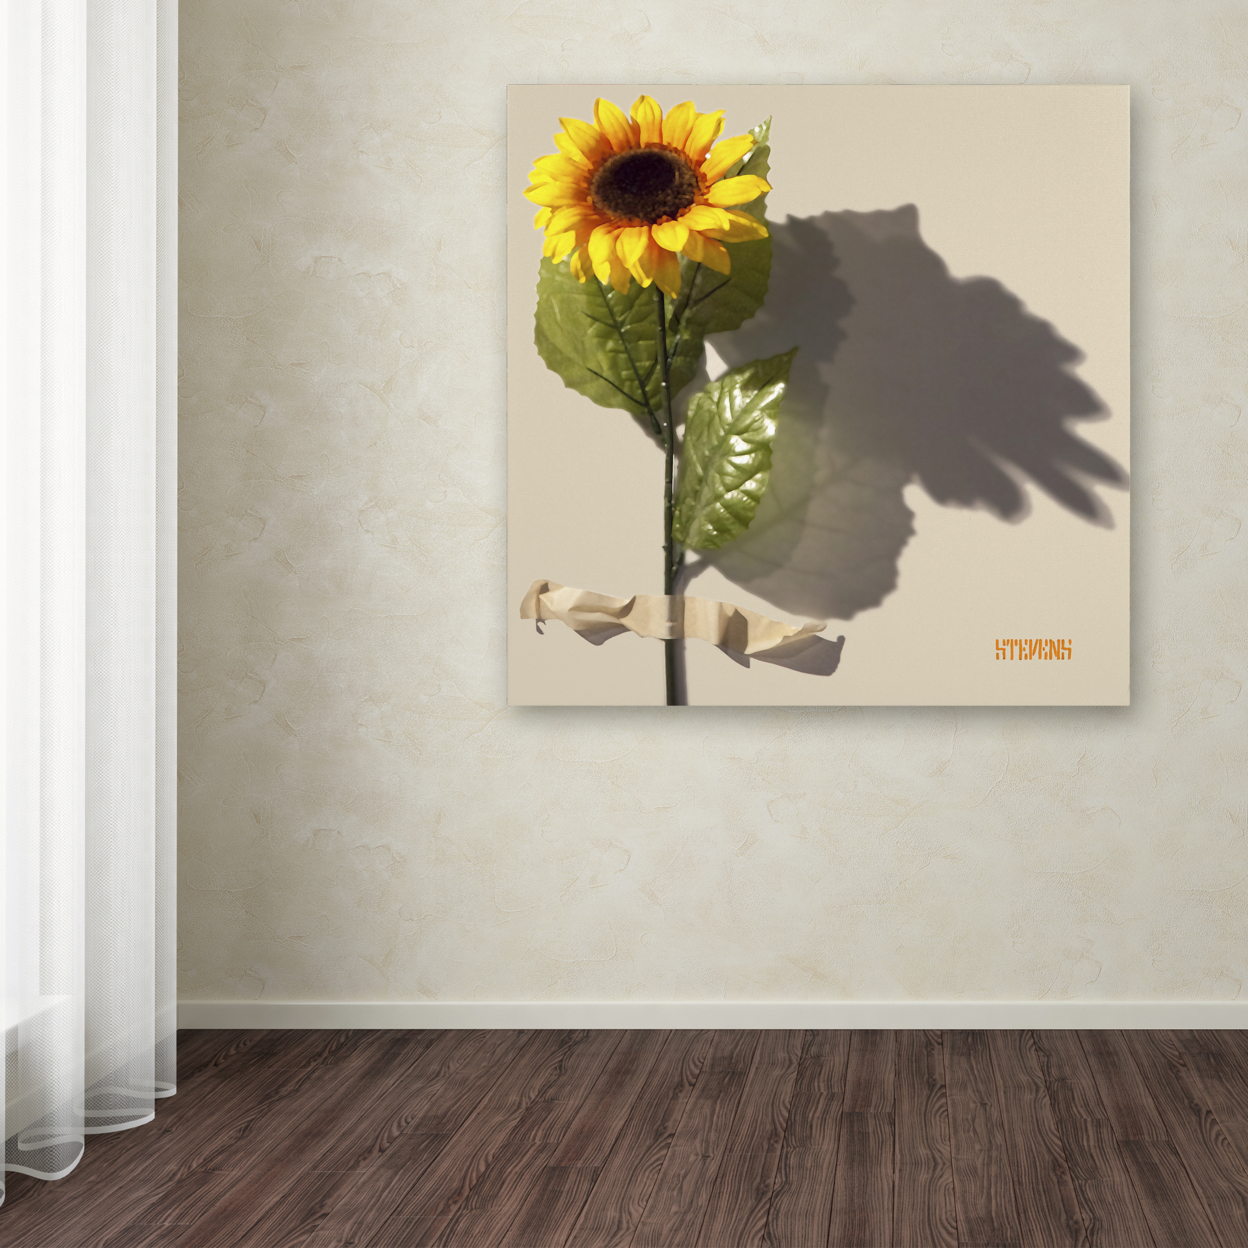 Roderick Stevens 'Sunflower' Large Canvas Art 35 X 35